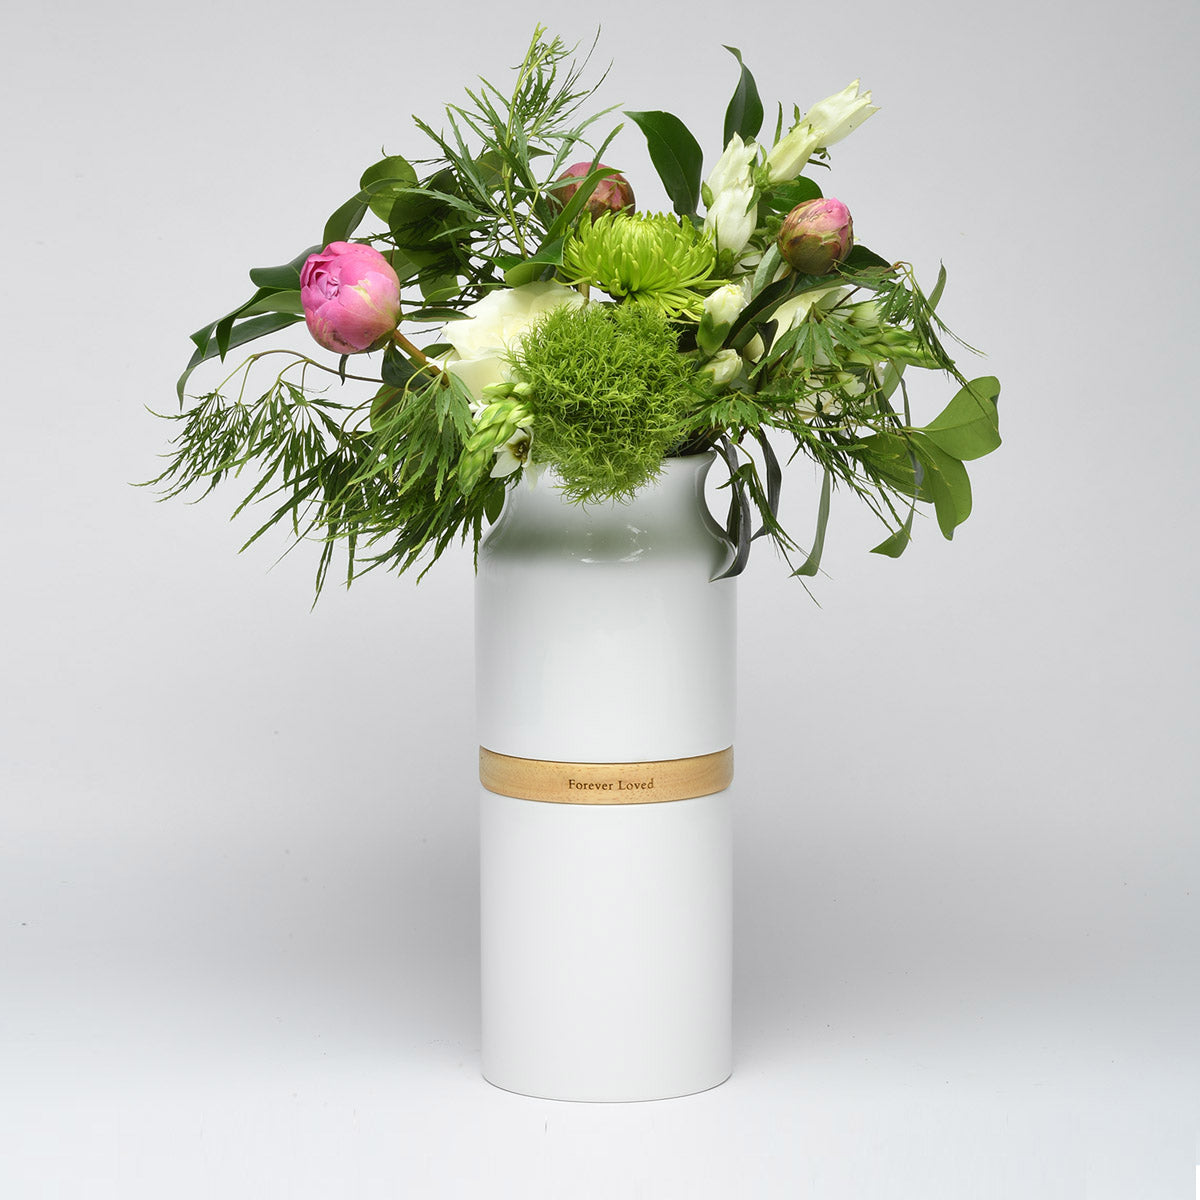 Vega Vase Urn in White With Light Wood